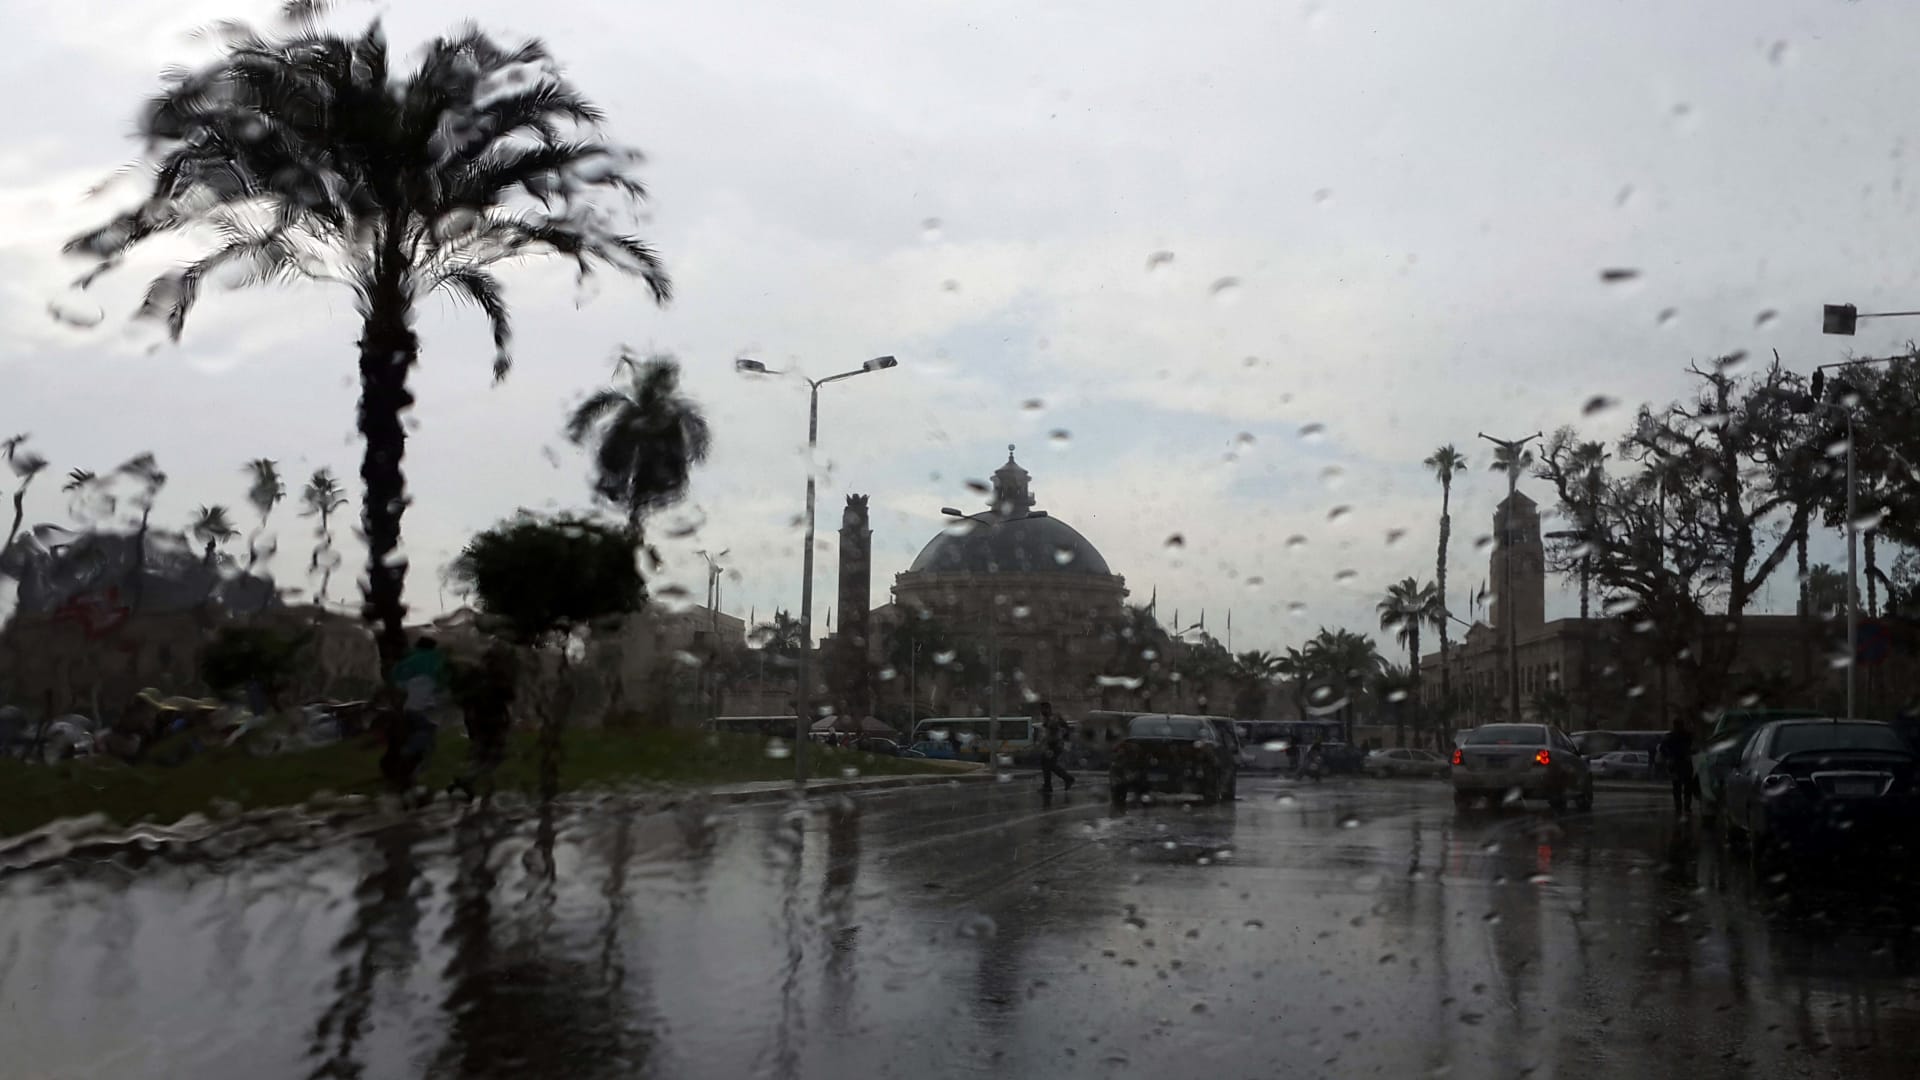 لماذا ستفرض مصر غرامة على من ينشر معلومات خاطئة عن الطقس؟.. خبراء يجيبون